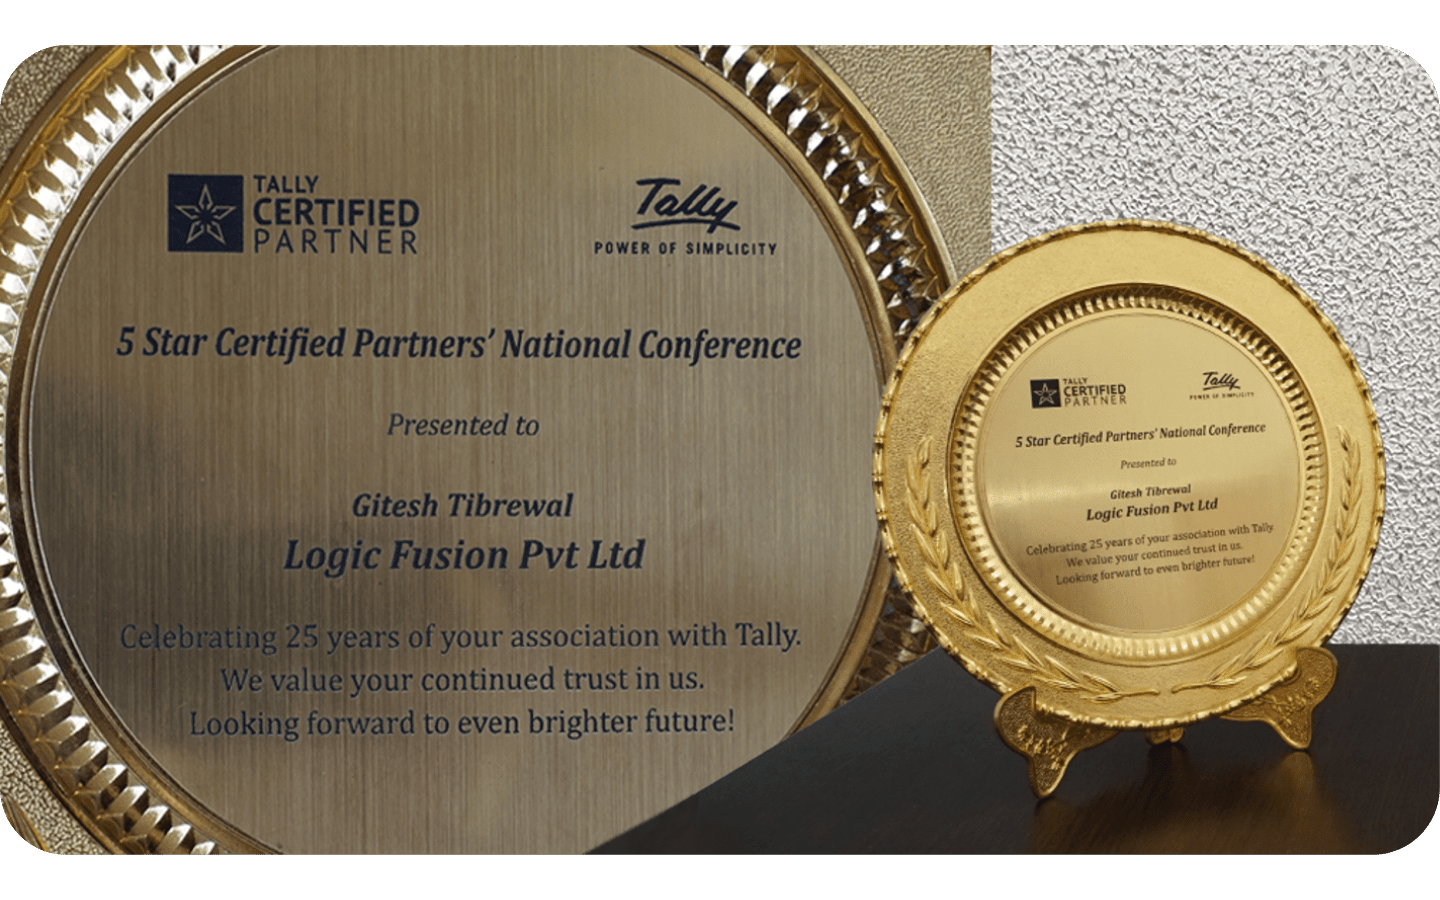 Tally's Award To Team Logic Fusion / Logic Fusion